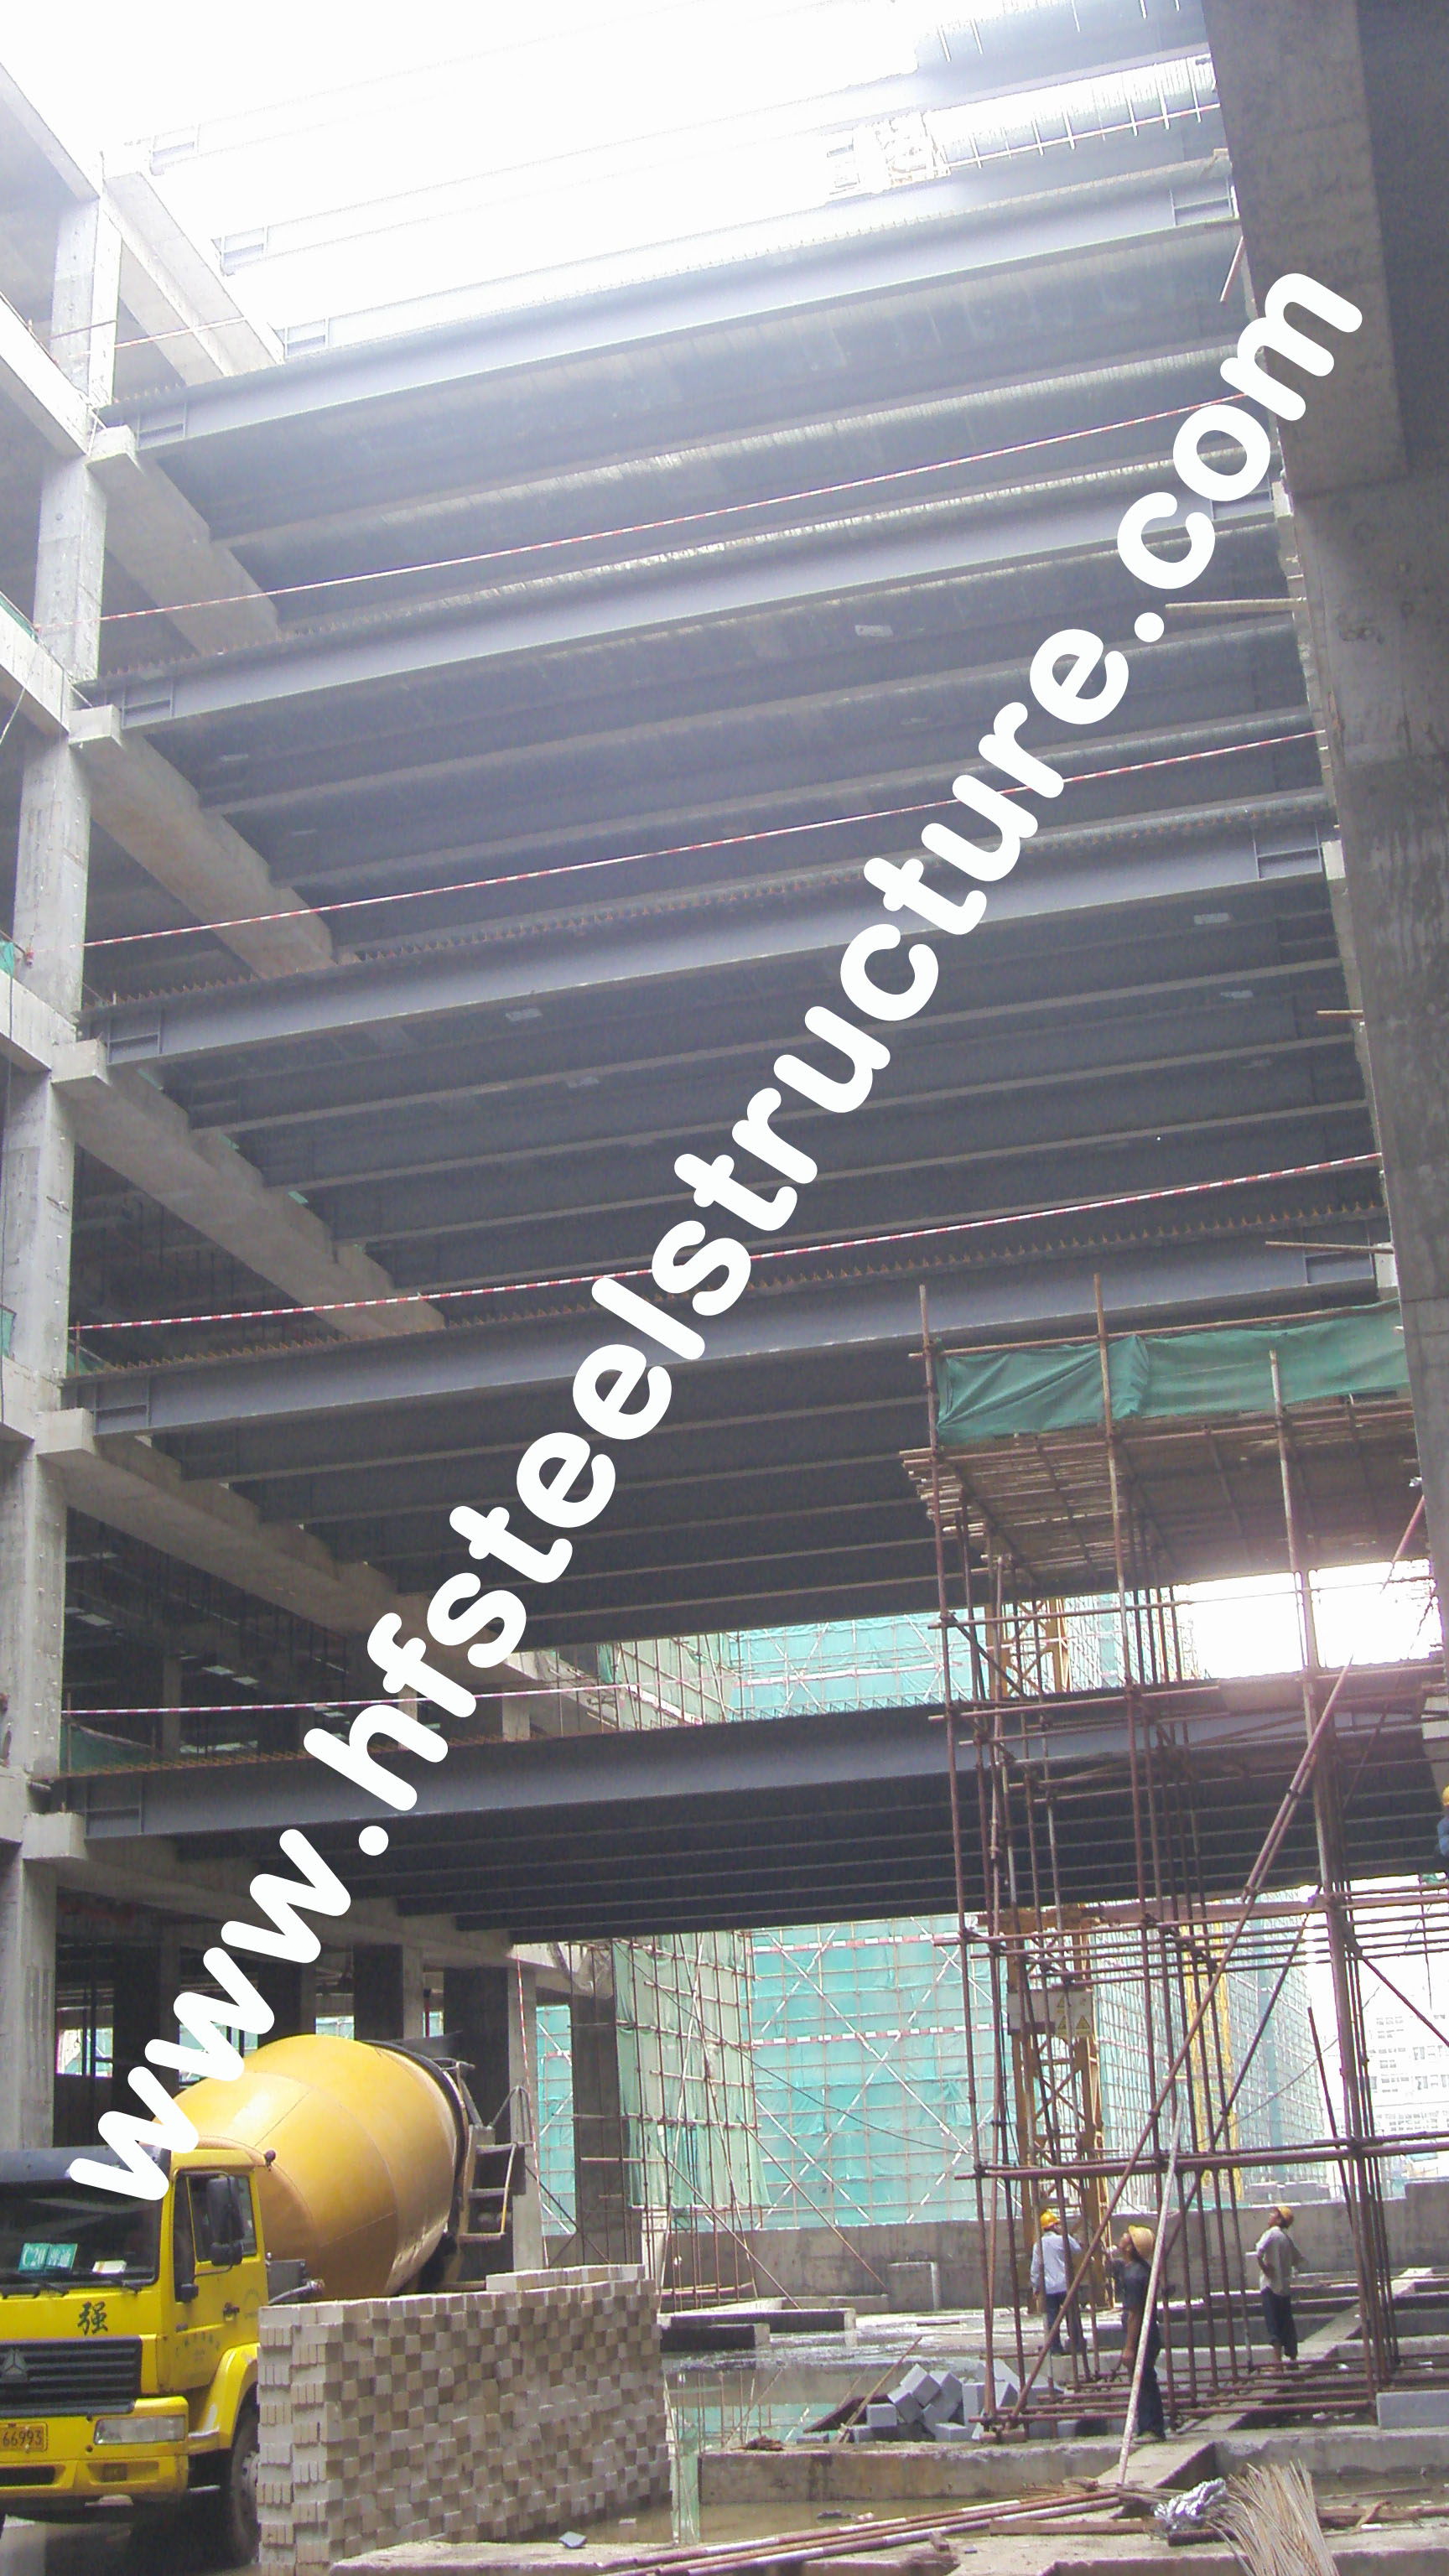 Sawing, Grinding, Pre-Engineered Prefabricated Waterproof Commercial Steel Buildings